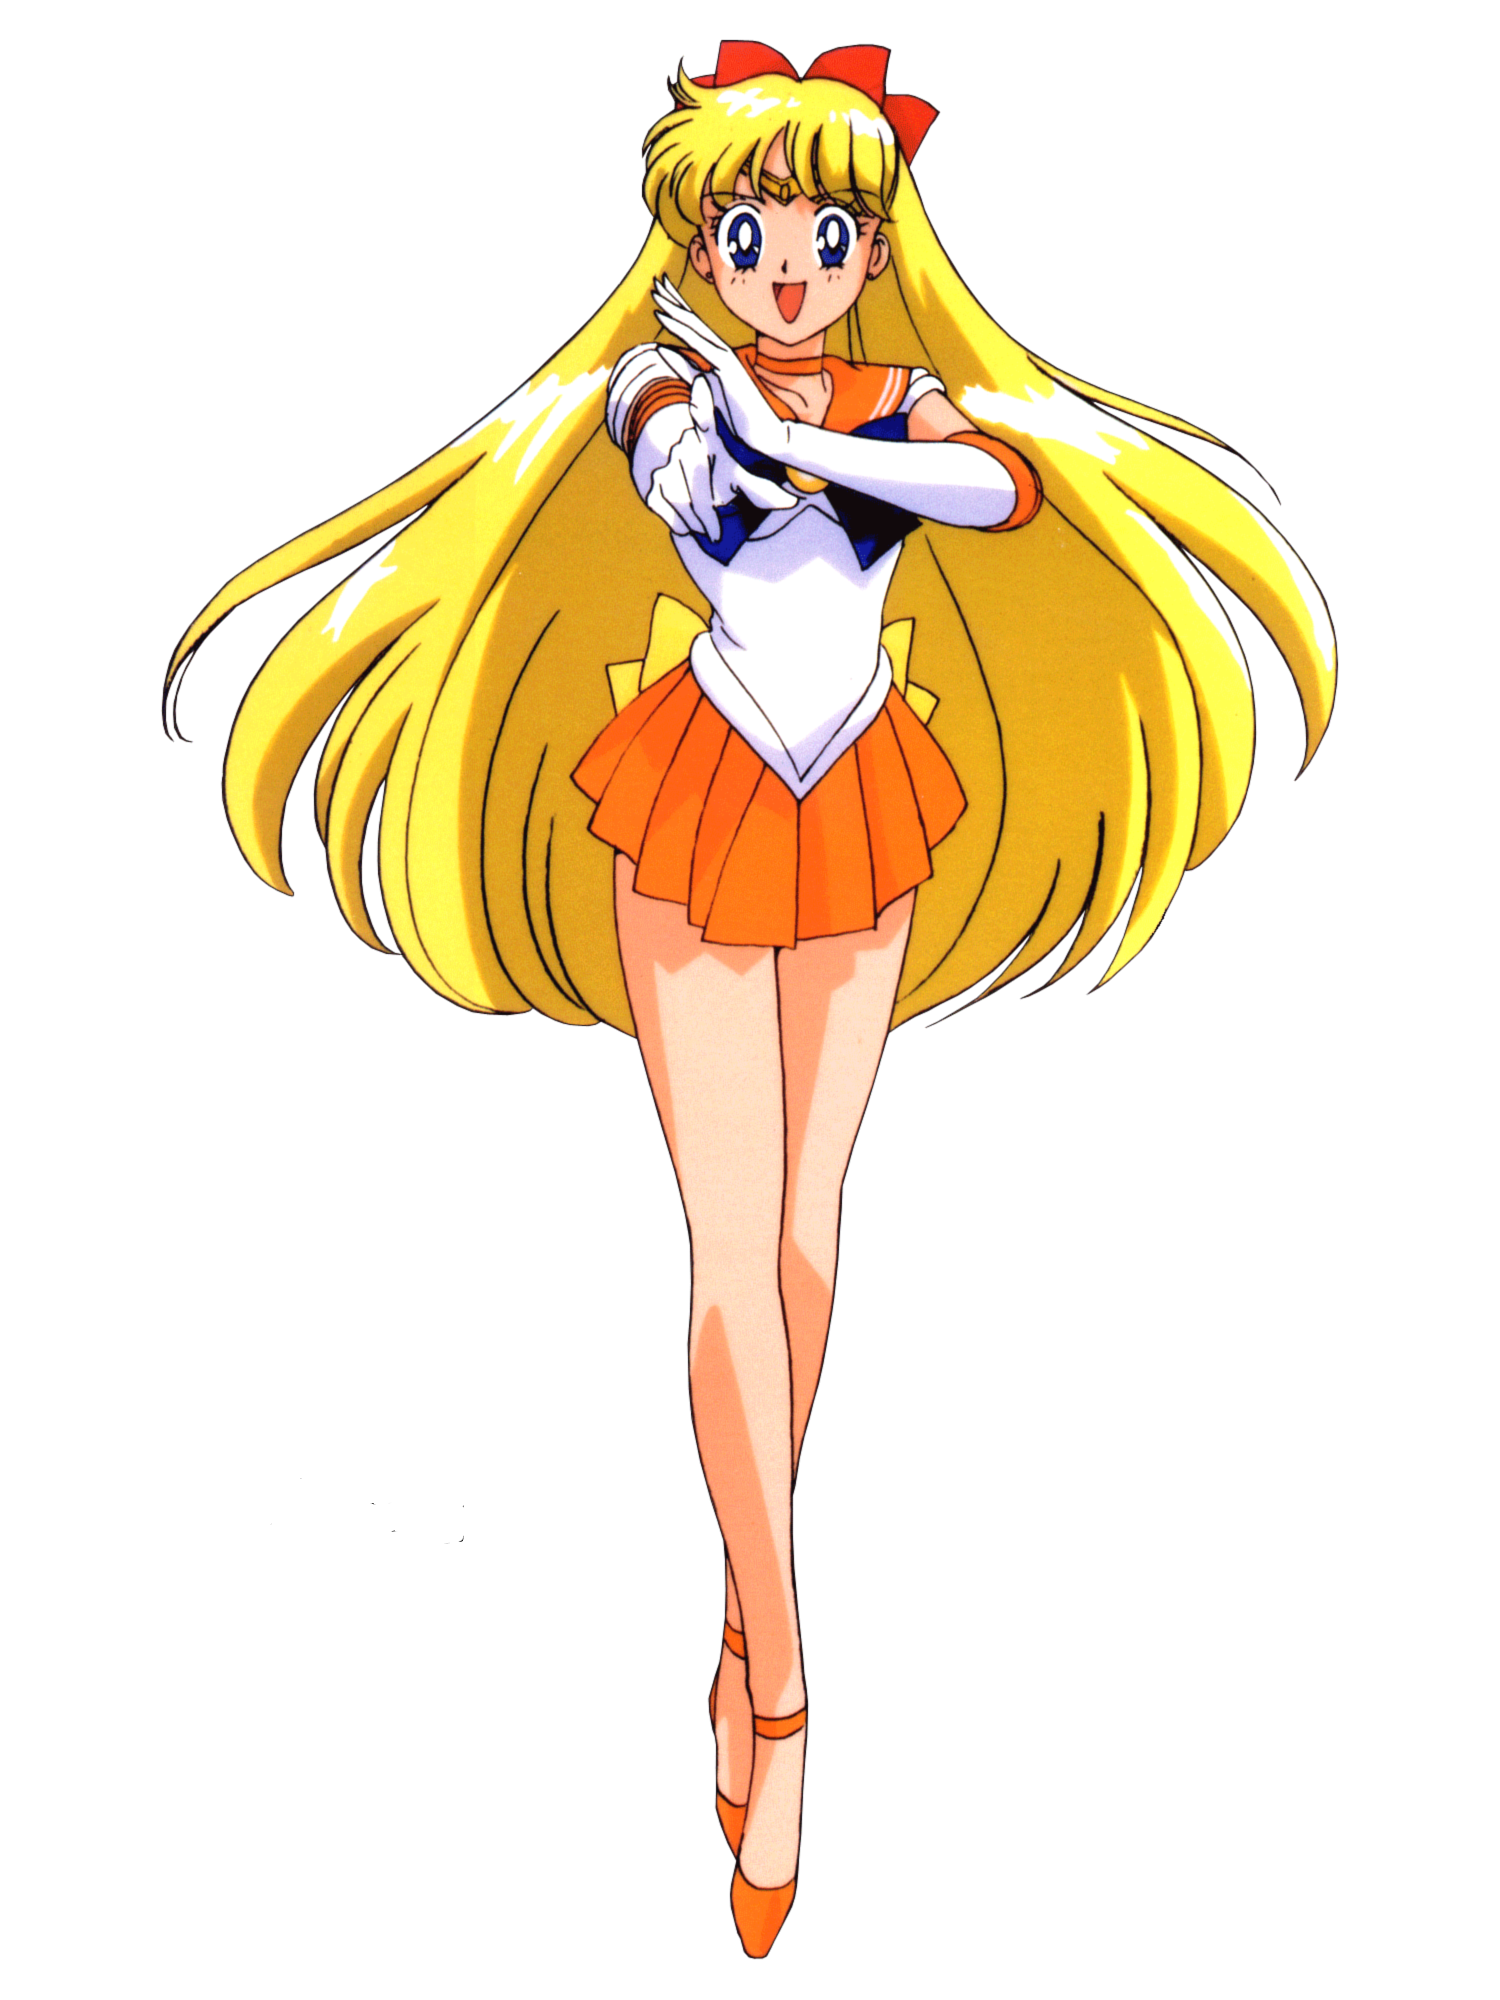 Sailor Vènus ou de son vrai nom Minako Aino (Mathilda) est une héroïne.